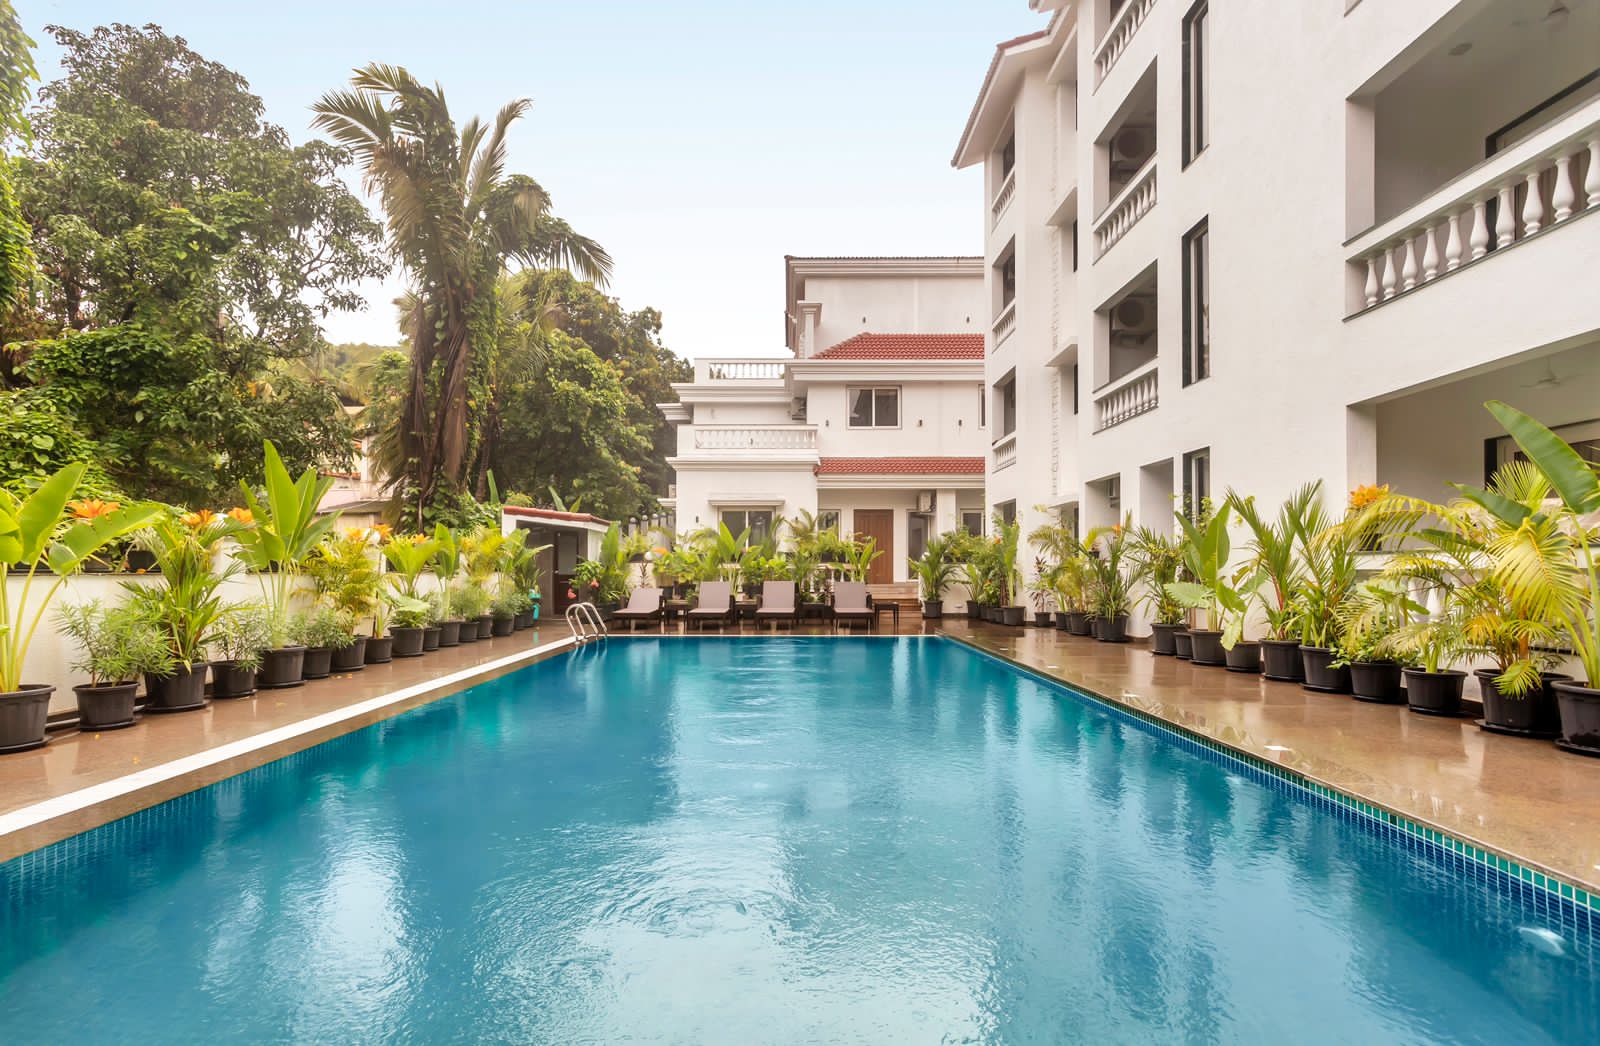 Luxury villas in Assagao, North Goa, India LT256